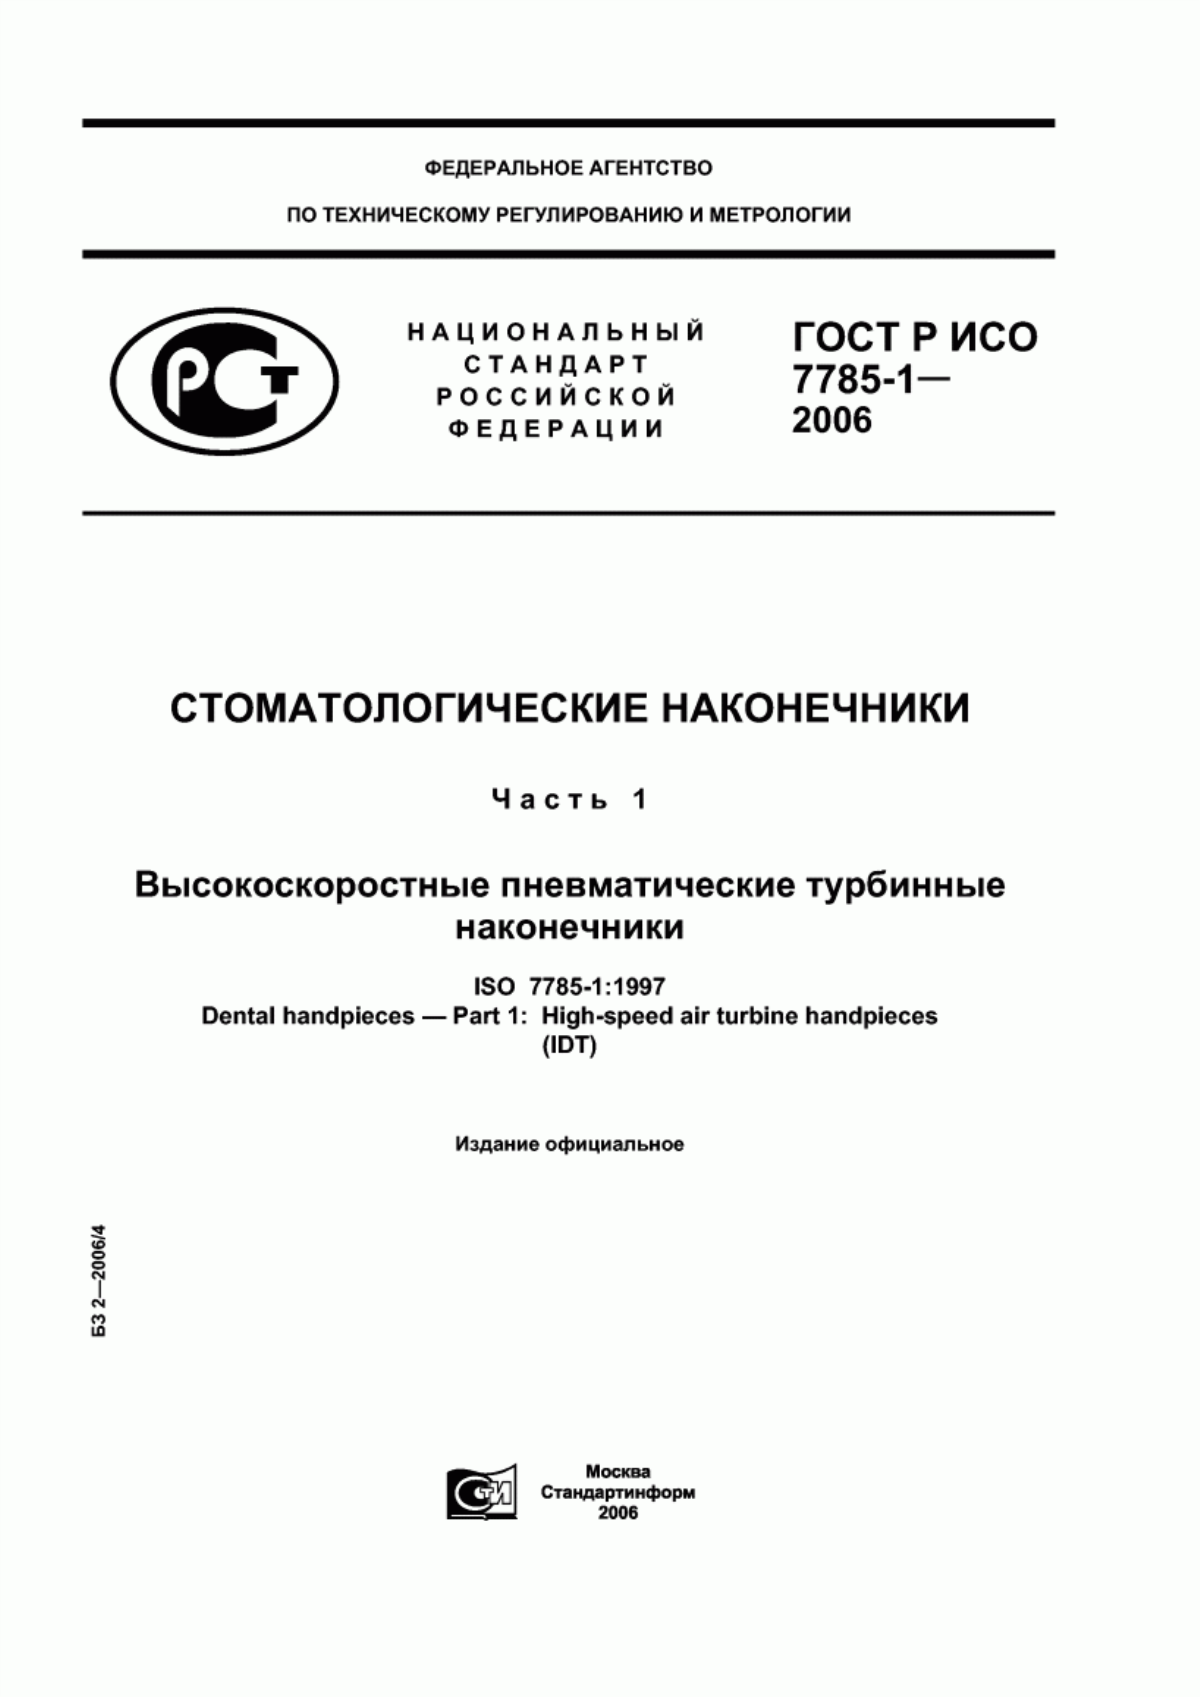 ГОСТ Р ИСО 7785-1-2006 Стоматологические наконечники. Часть 1. Высокоскоростные пневматические турбинные наконечники